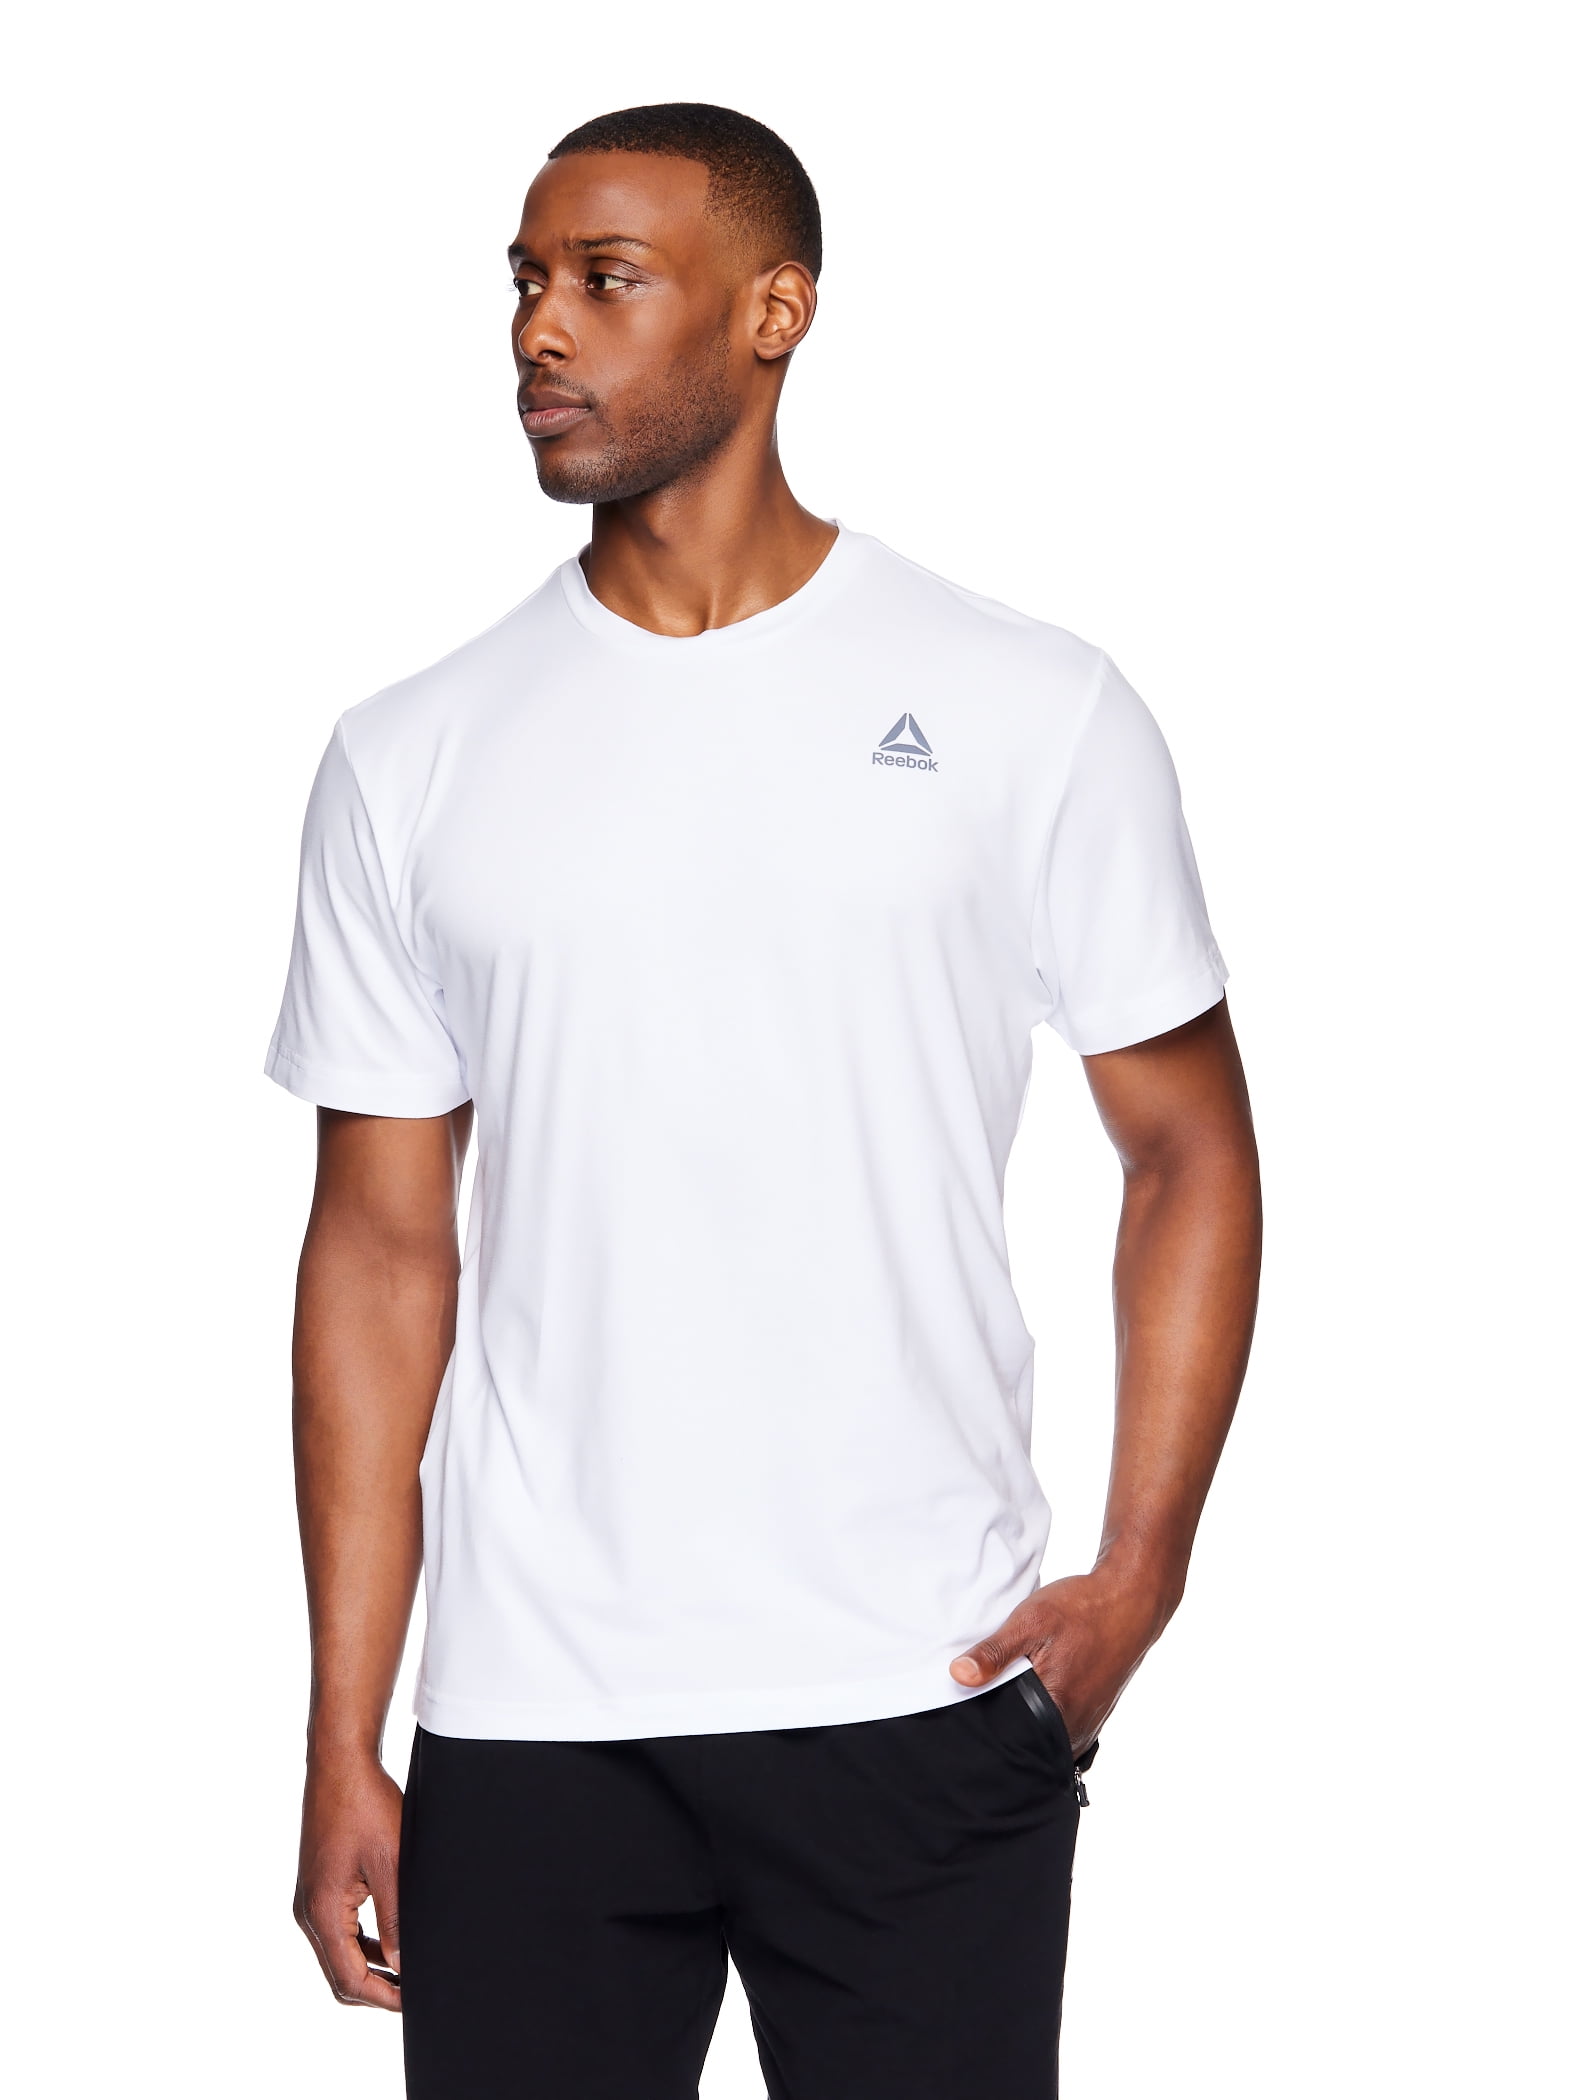 Men's and Big Delta T-Shirt, Size 3XL - Walmart.com